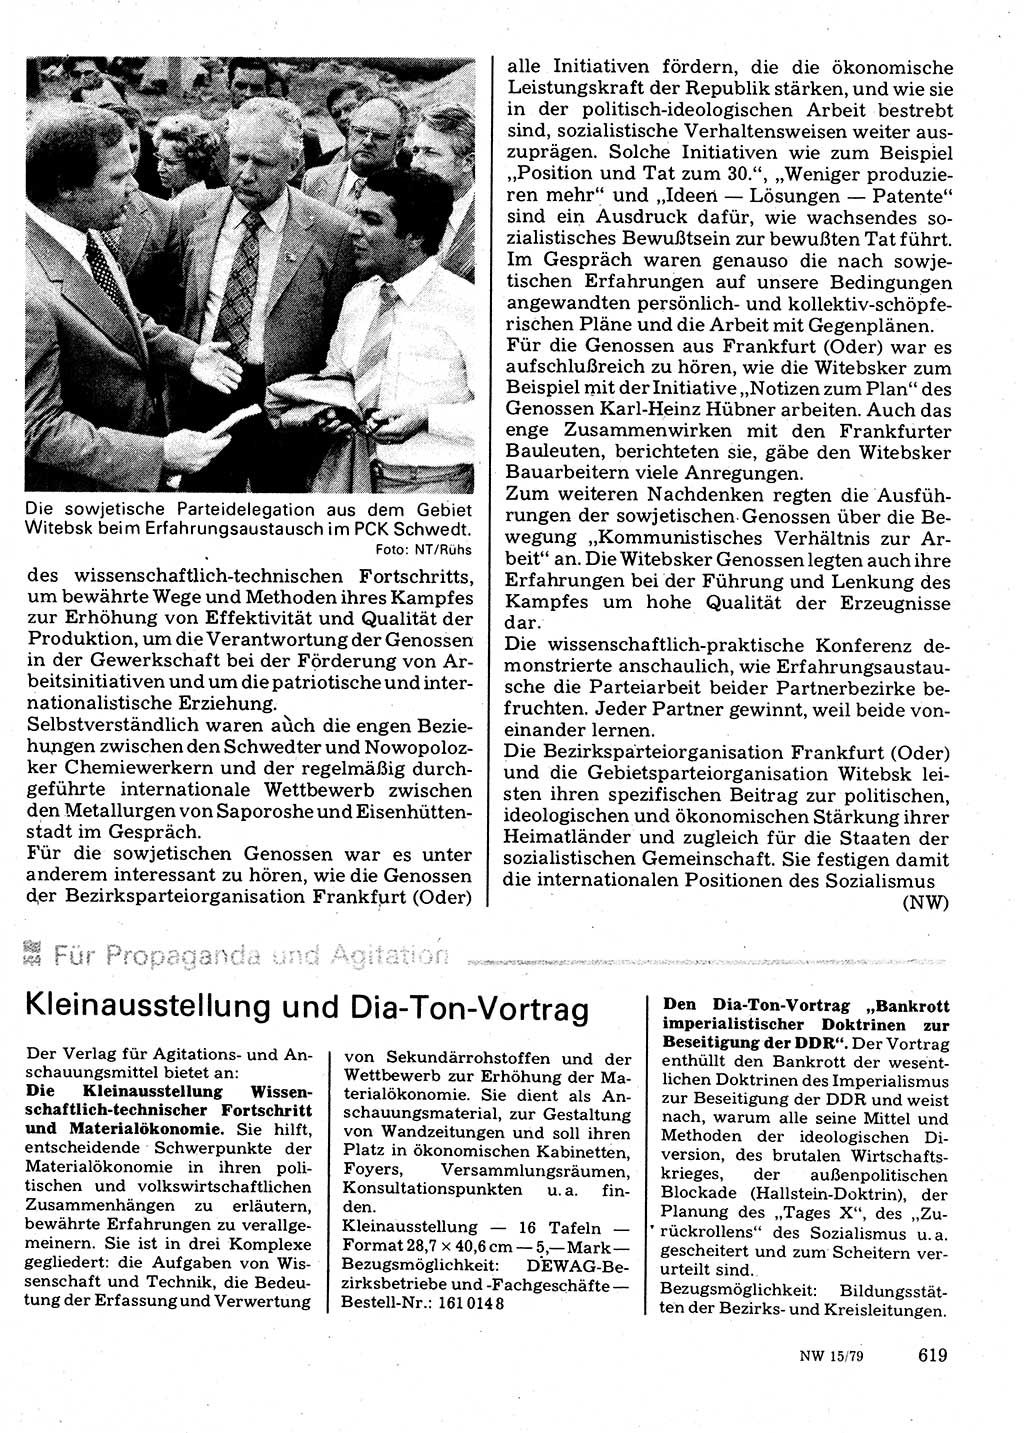 Neuer Weg (NW), Organ des Zentralkomitees (ZK) der SED (Sozialistische Einheitspartei Deutschlands) für Fragen des Parteilebens, 34. Jahrgang [Deutsche Demokratische Republik (DDR)] 1979, Seite 619 (NW ZK SED DDR 1979, S. 619)